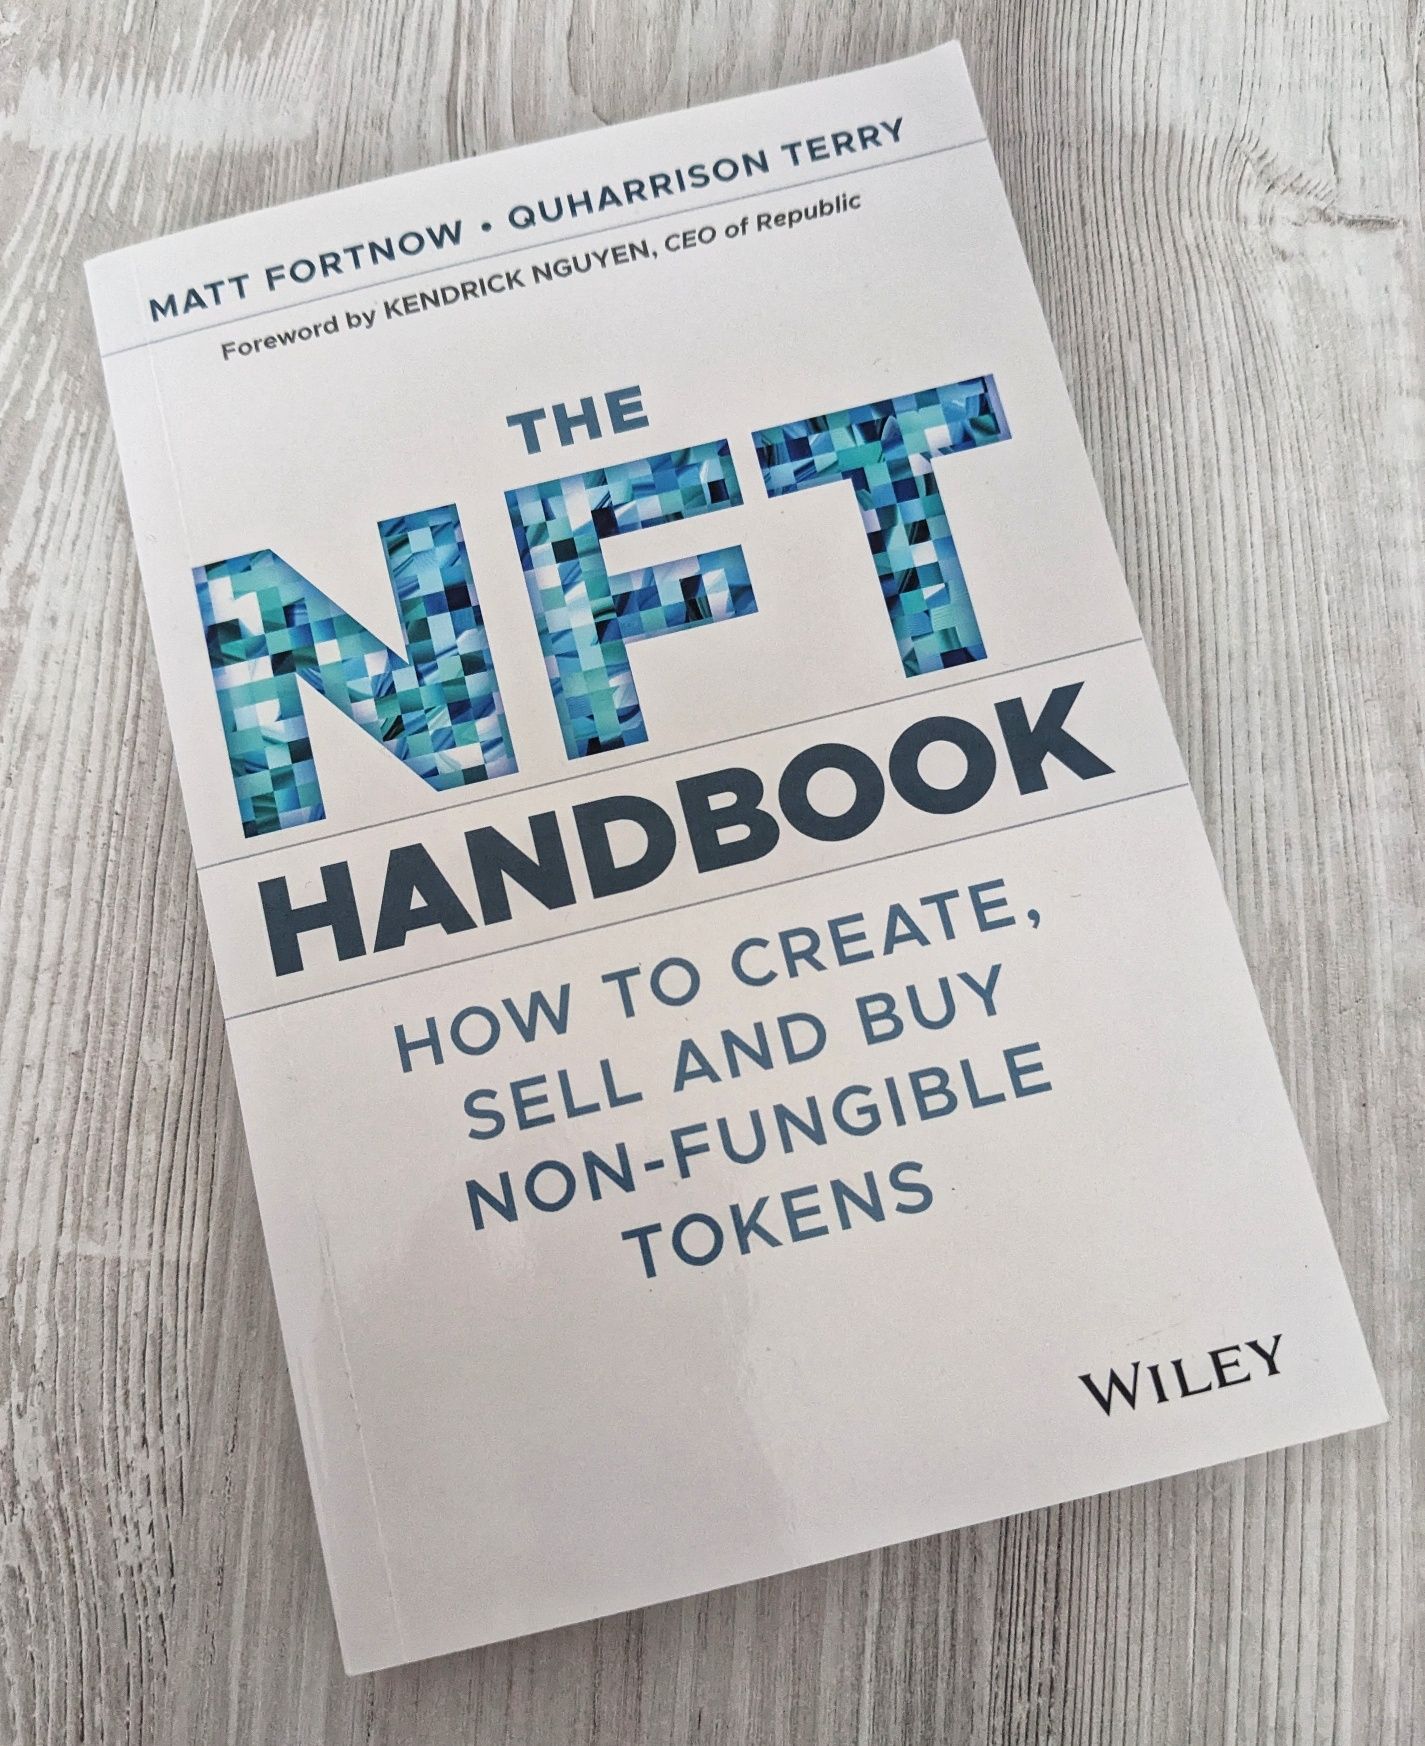 Vând carte "The NFT Handbook" de Matt Fortnow și QuHarrison Terry